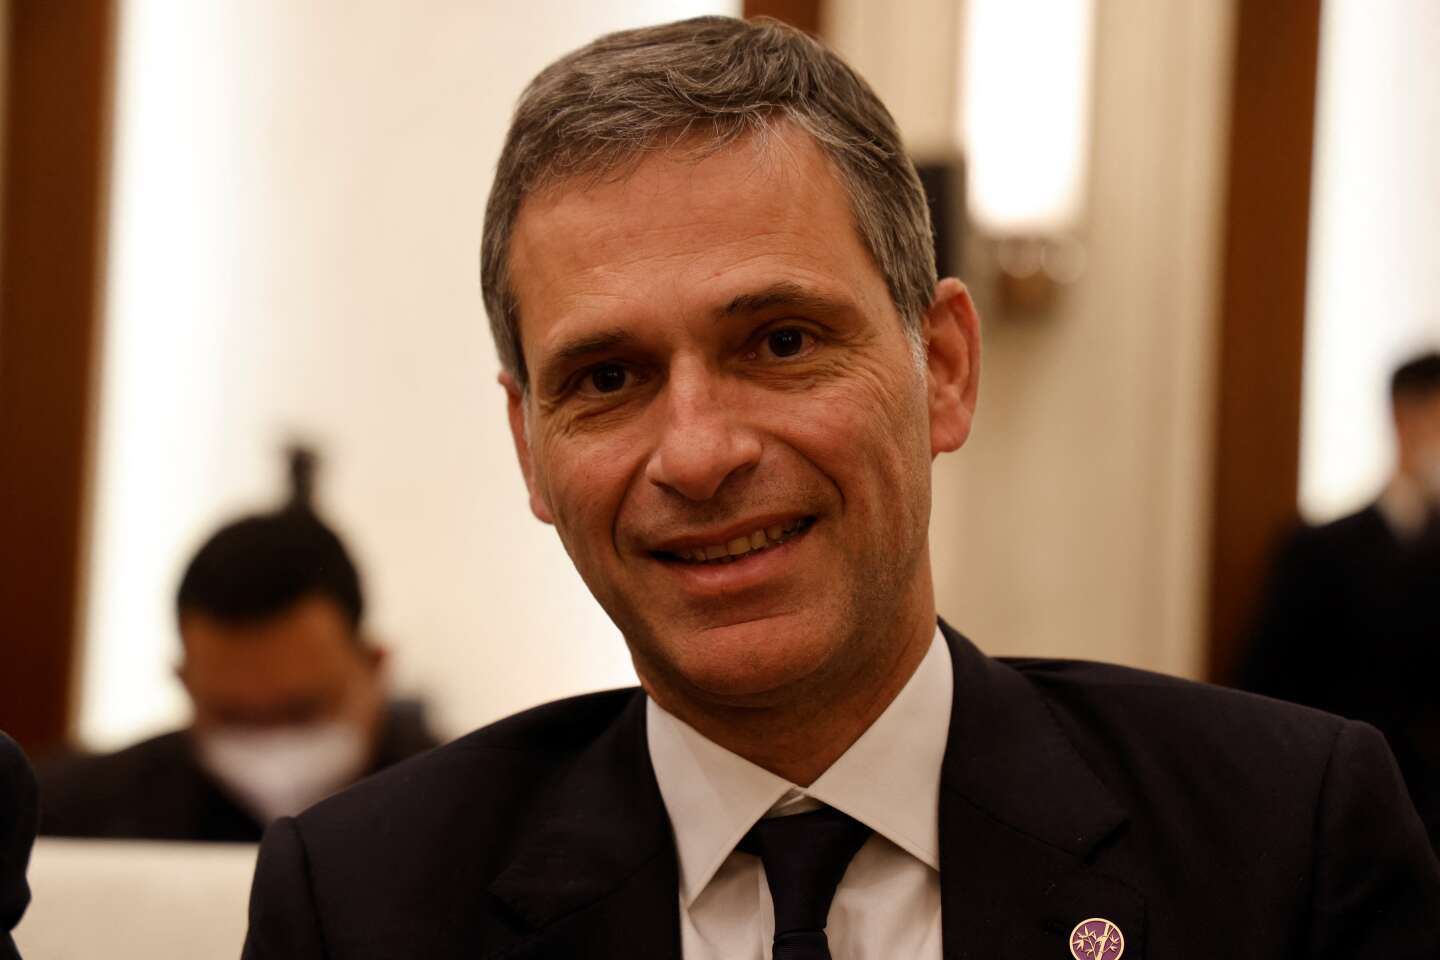 Reder Rodolphe Saadé, voorzitter van CMA CGM, is van plan “La Tribune” te kopen